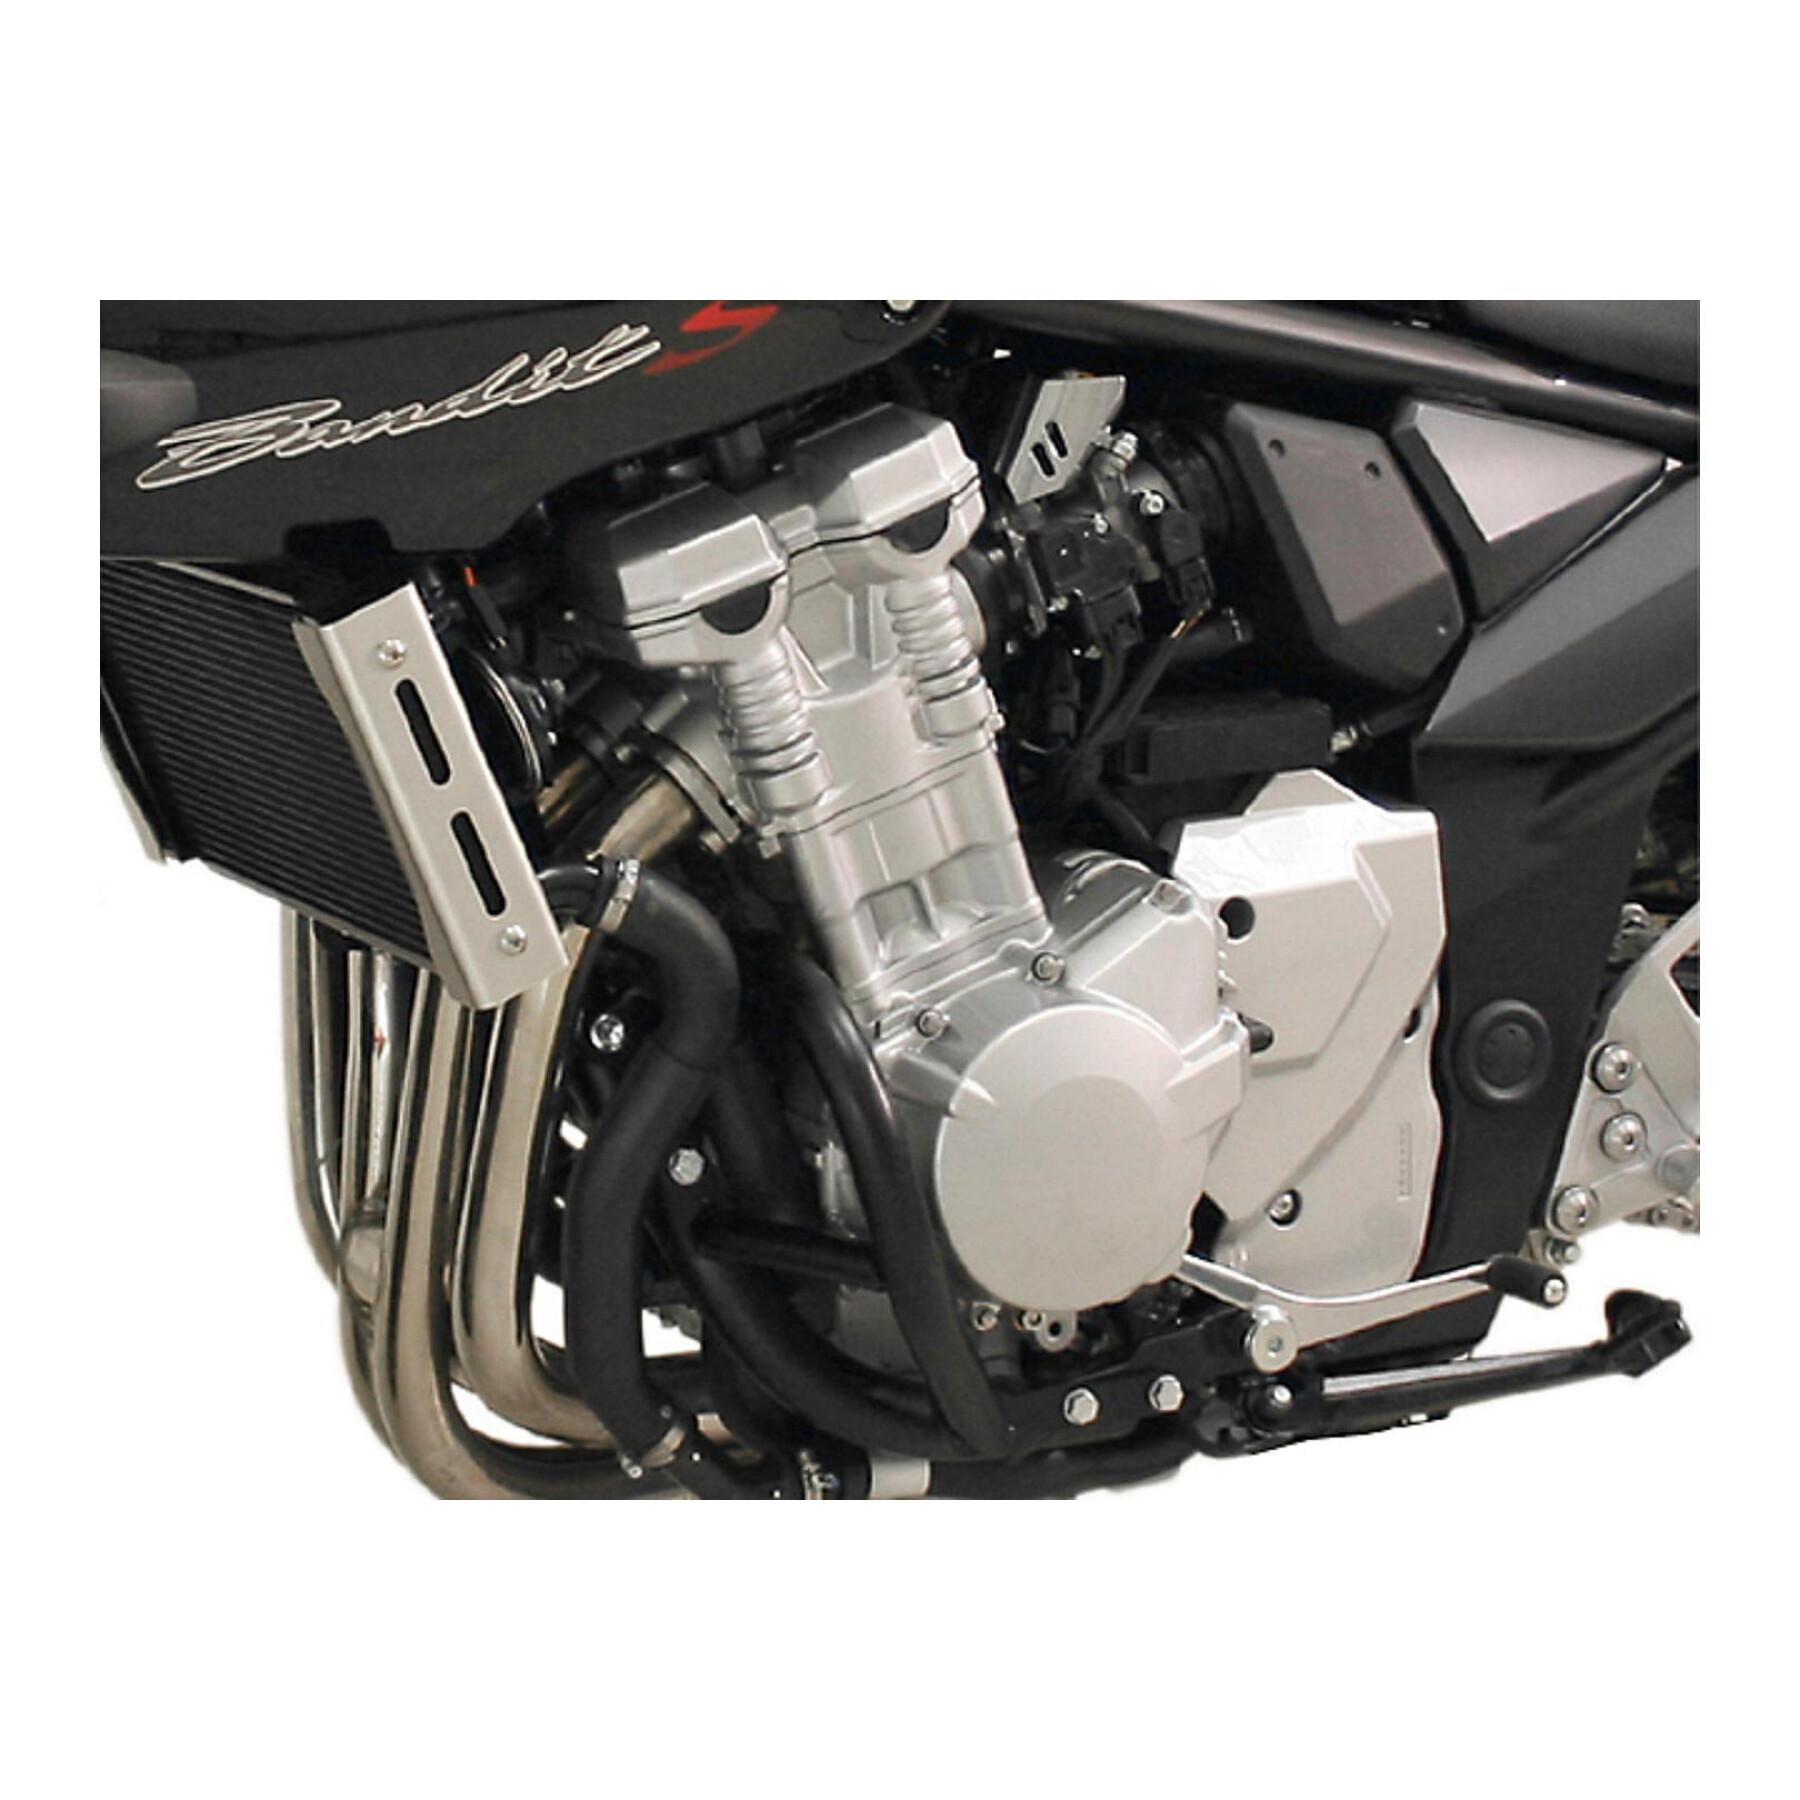 Protecciones para motos Sw-Motech Crashbar Suzuki Gsf 650 Bandit / S (07-)